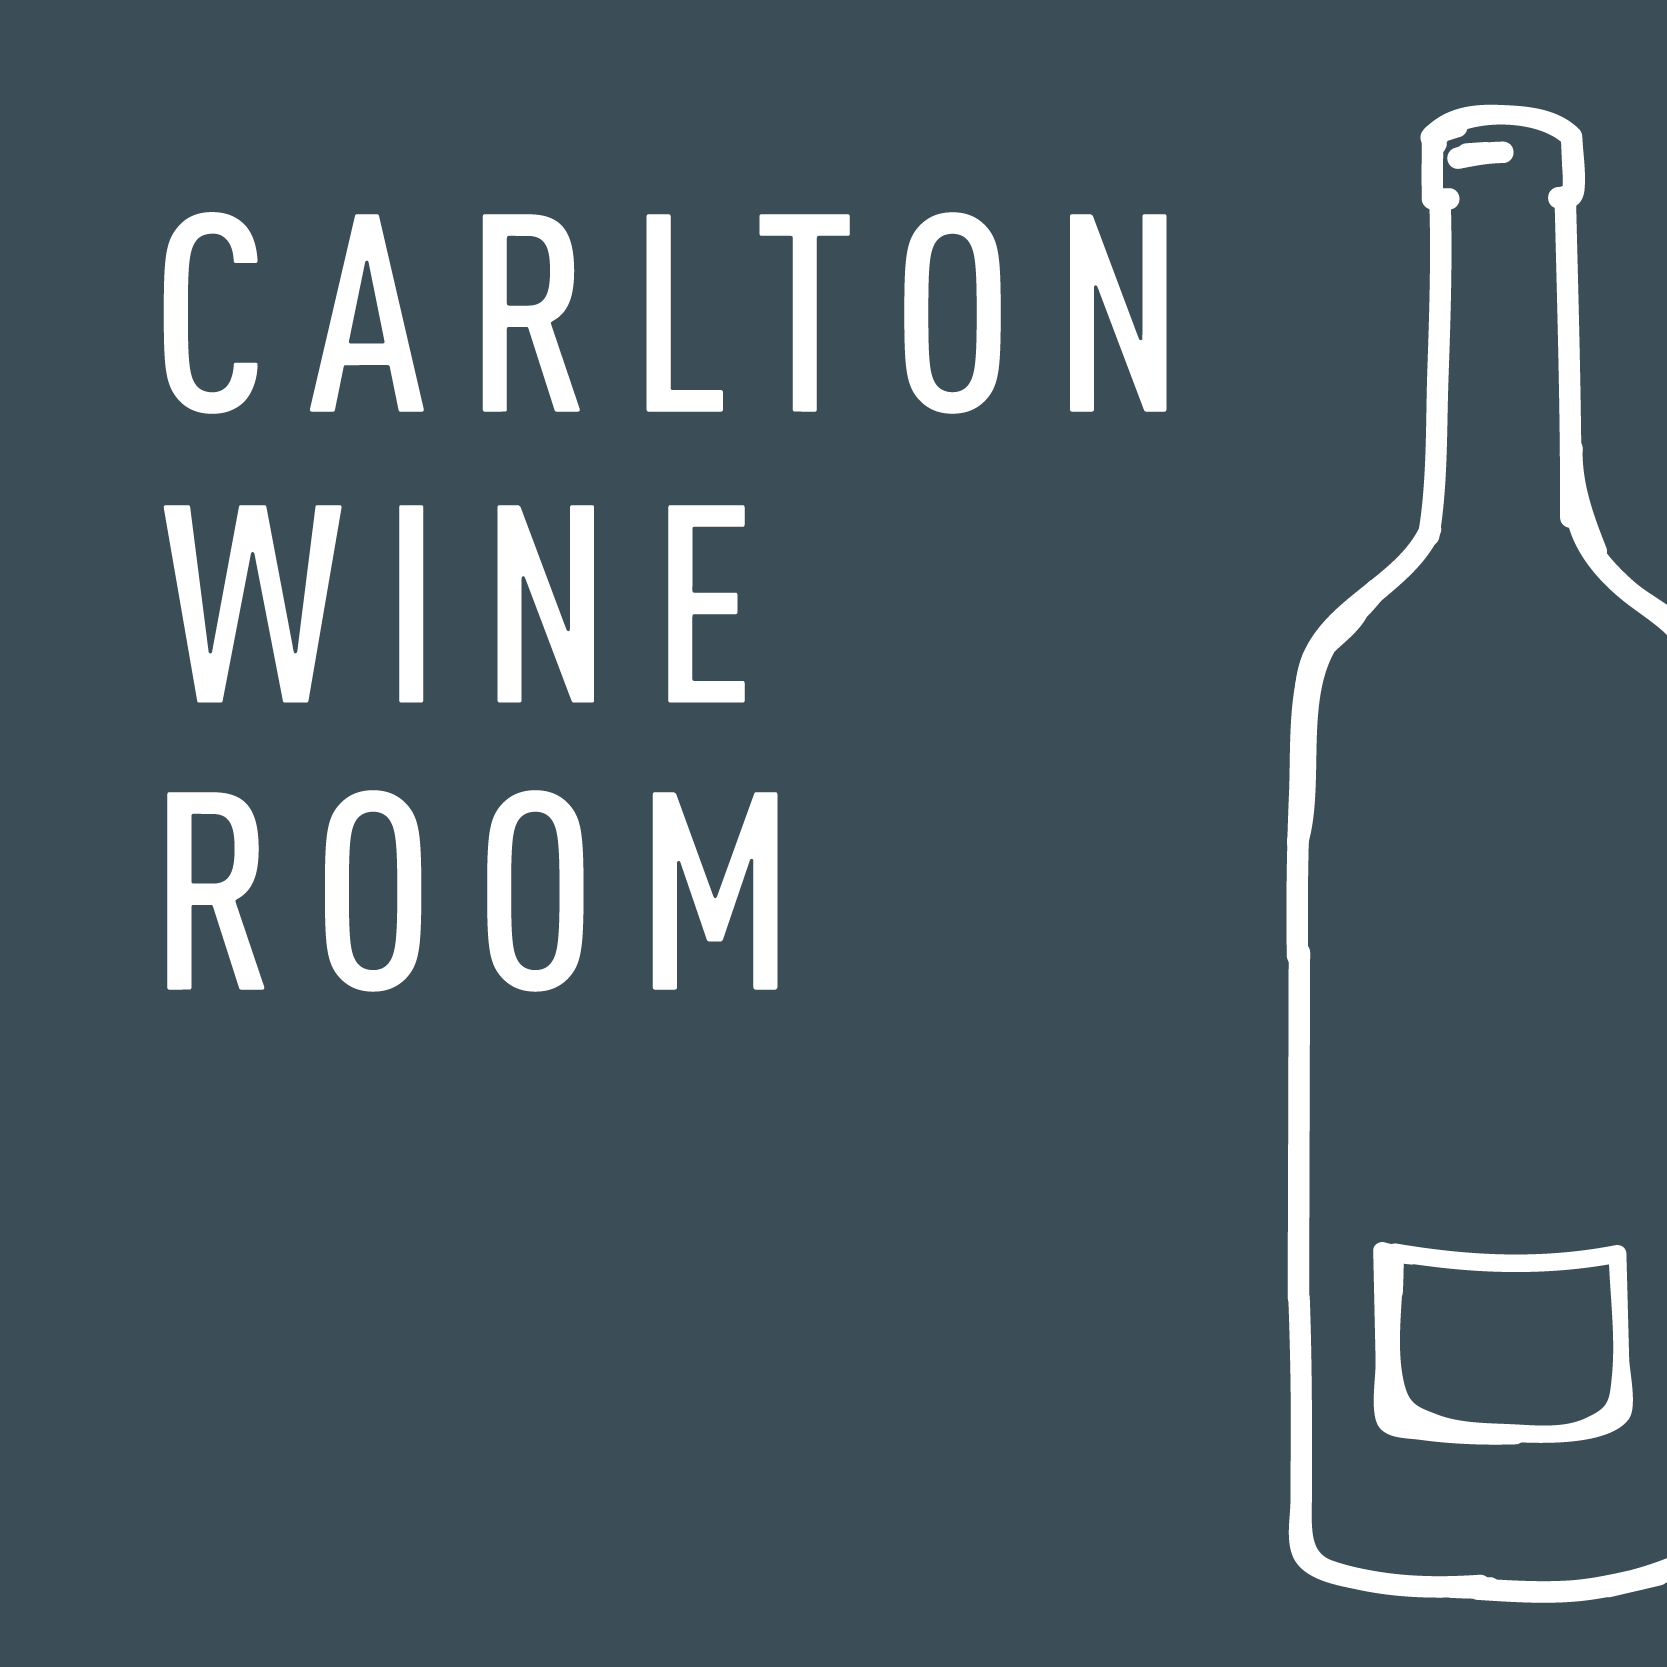 Carlton Wine Room